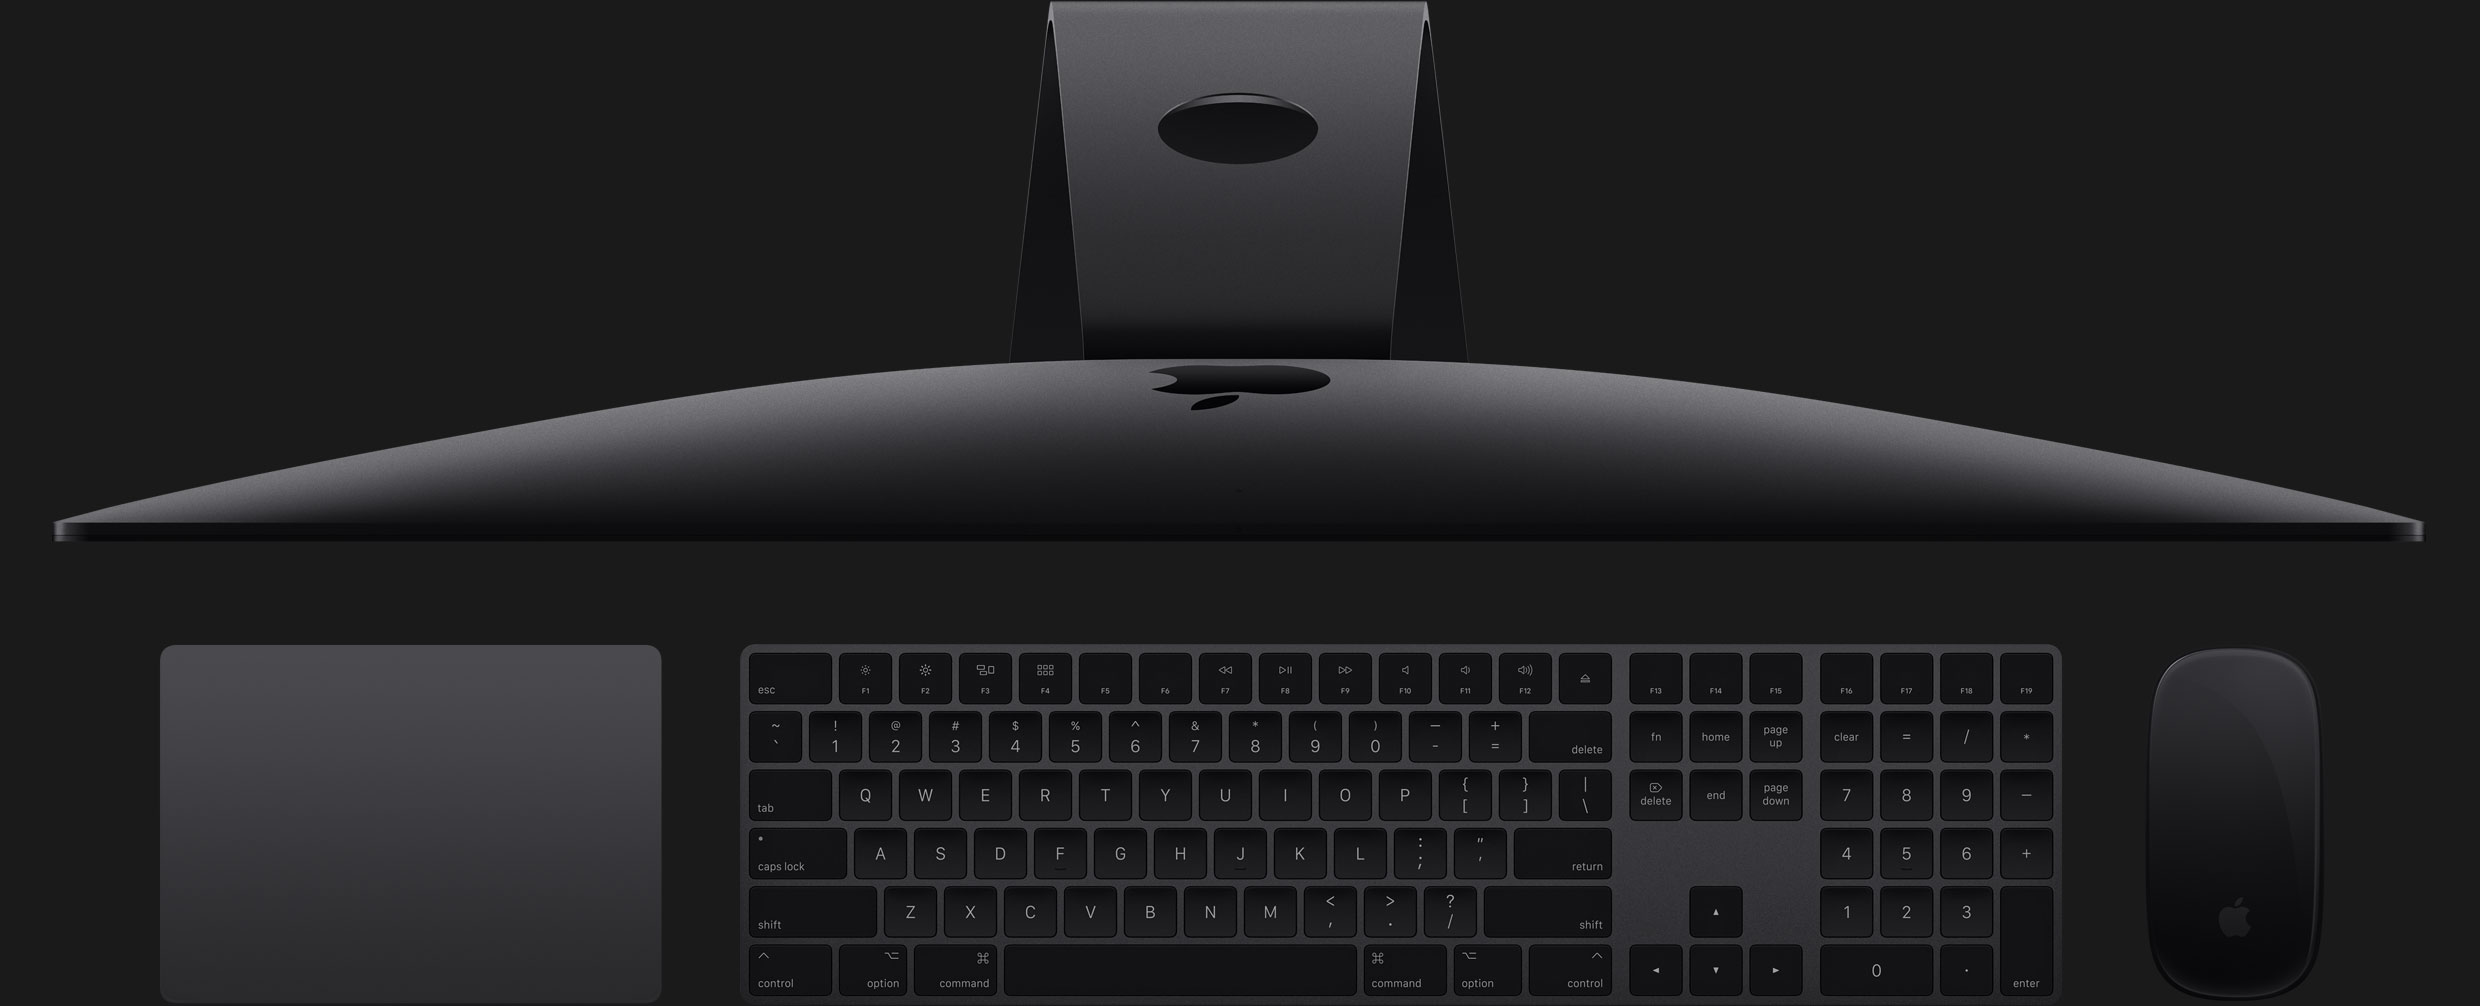 iMac Pro adopta el color gris espacial como símbolo de su potencia